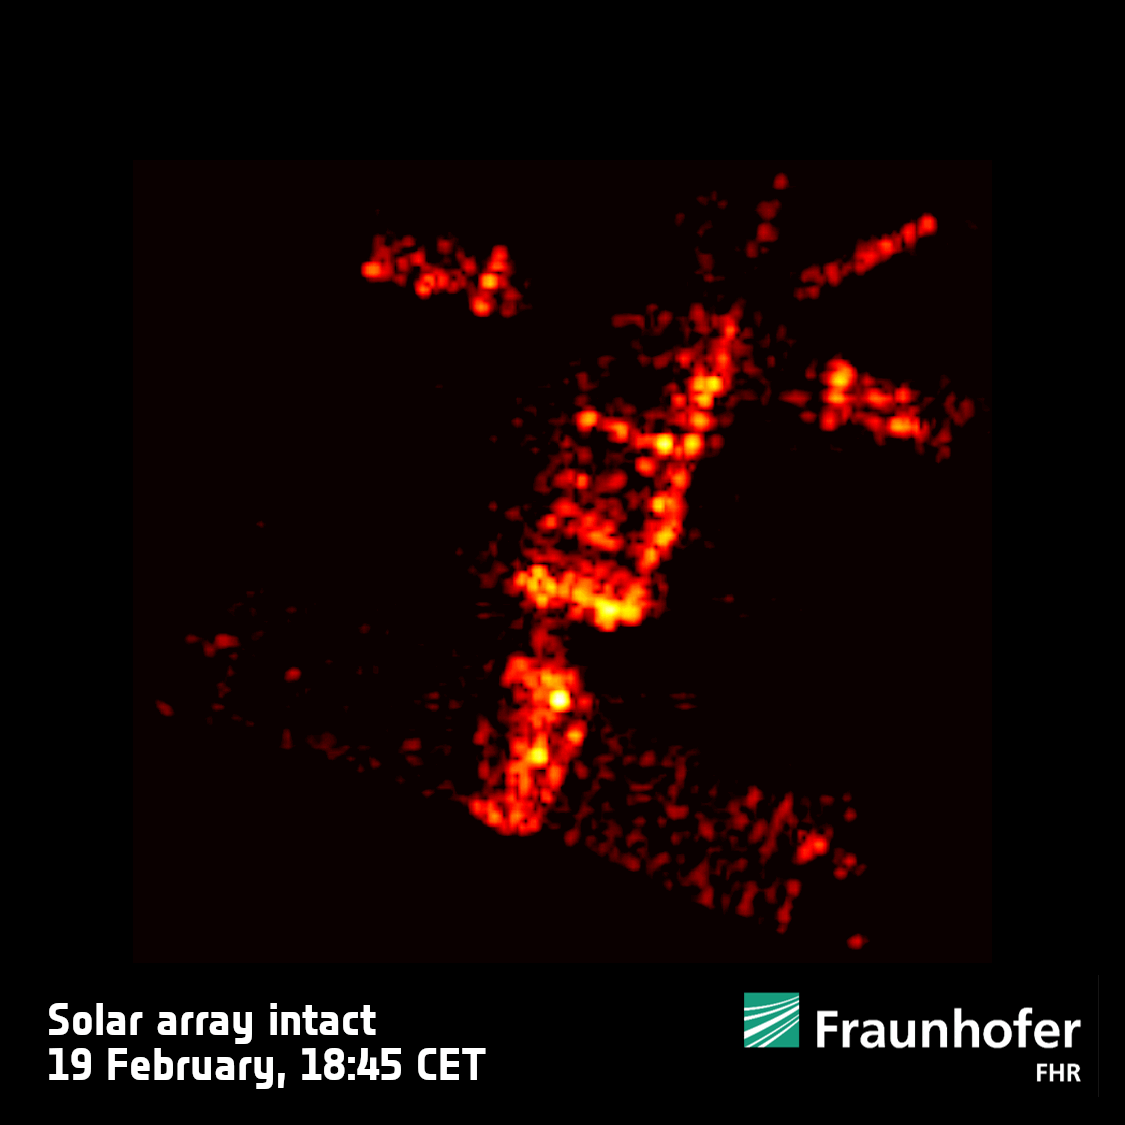 Le immagini radar rivelano danni al satellite europeo ERS-2 durante le orbite finali